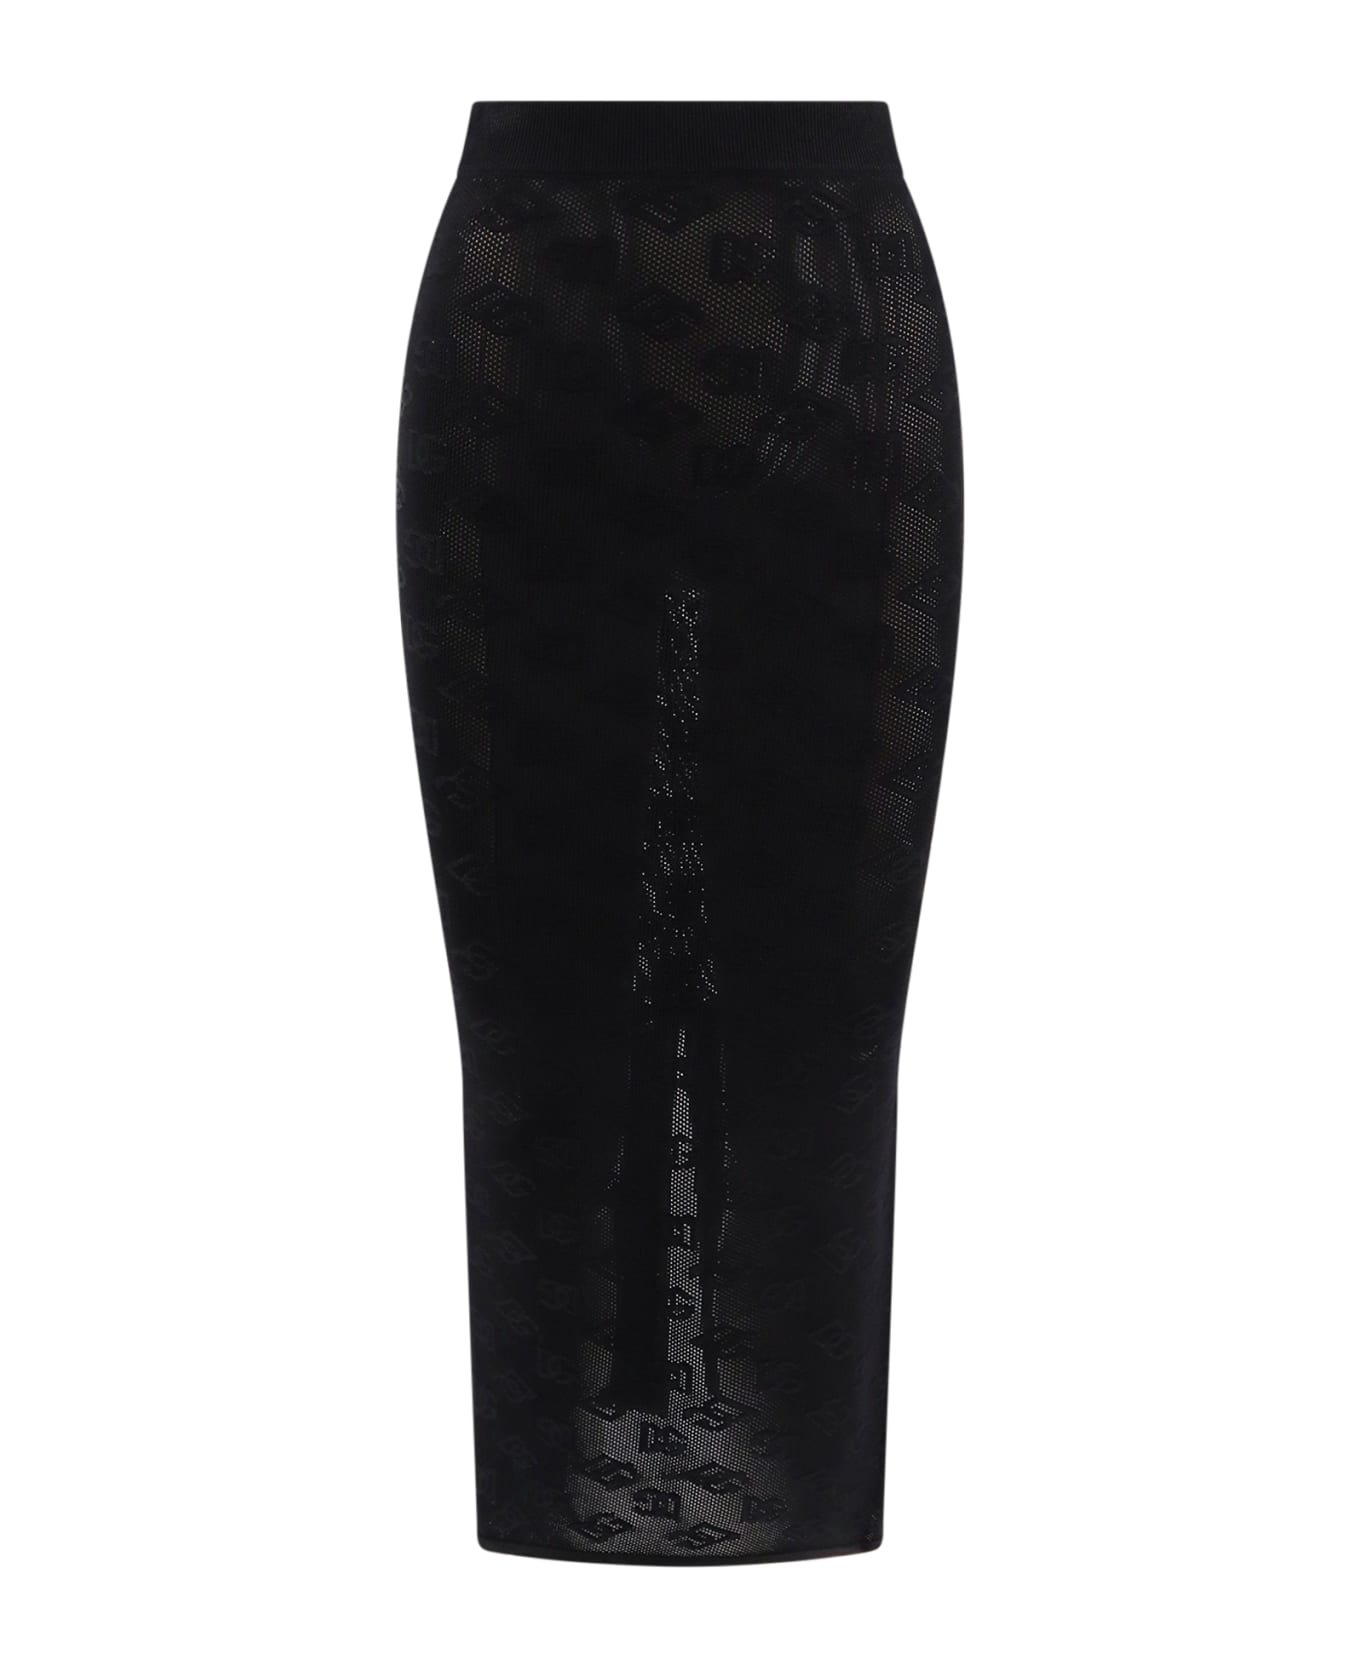 Dolce & Gabbana Dg Skirt - Black